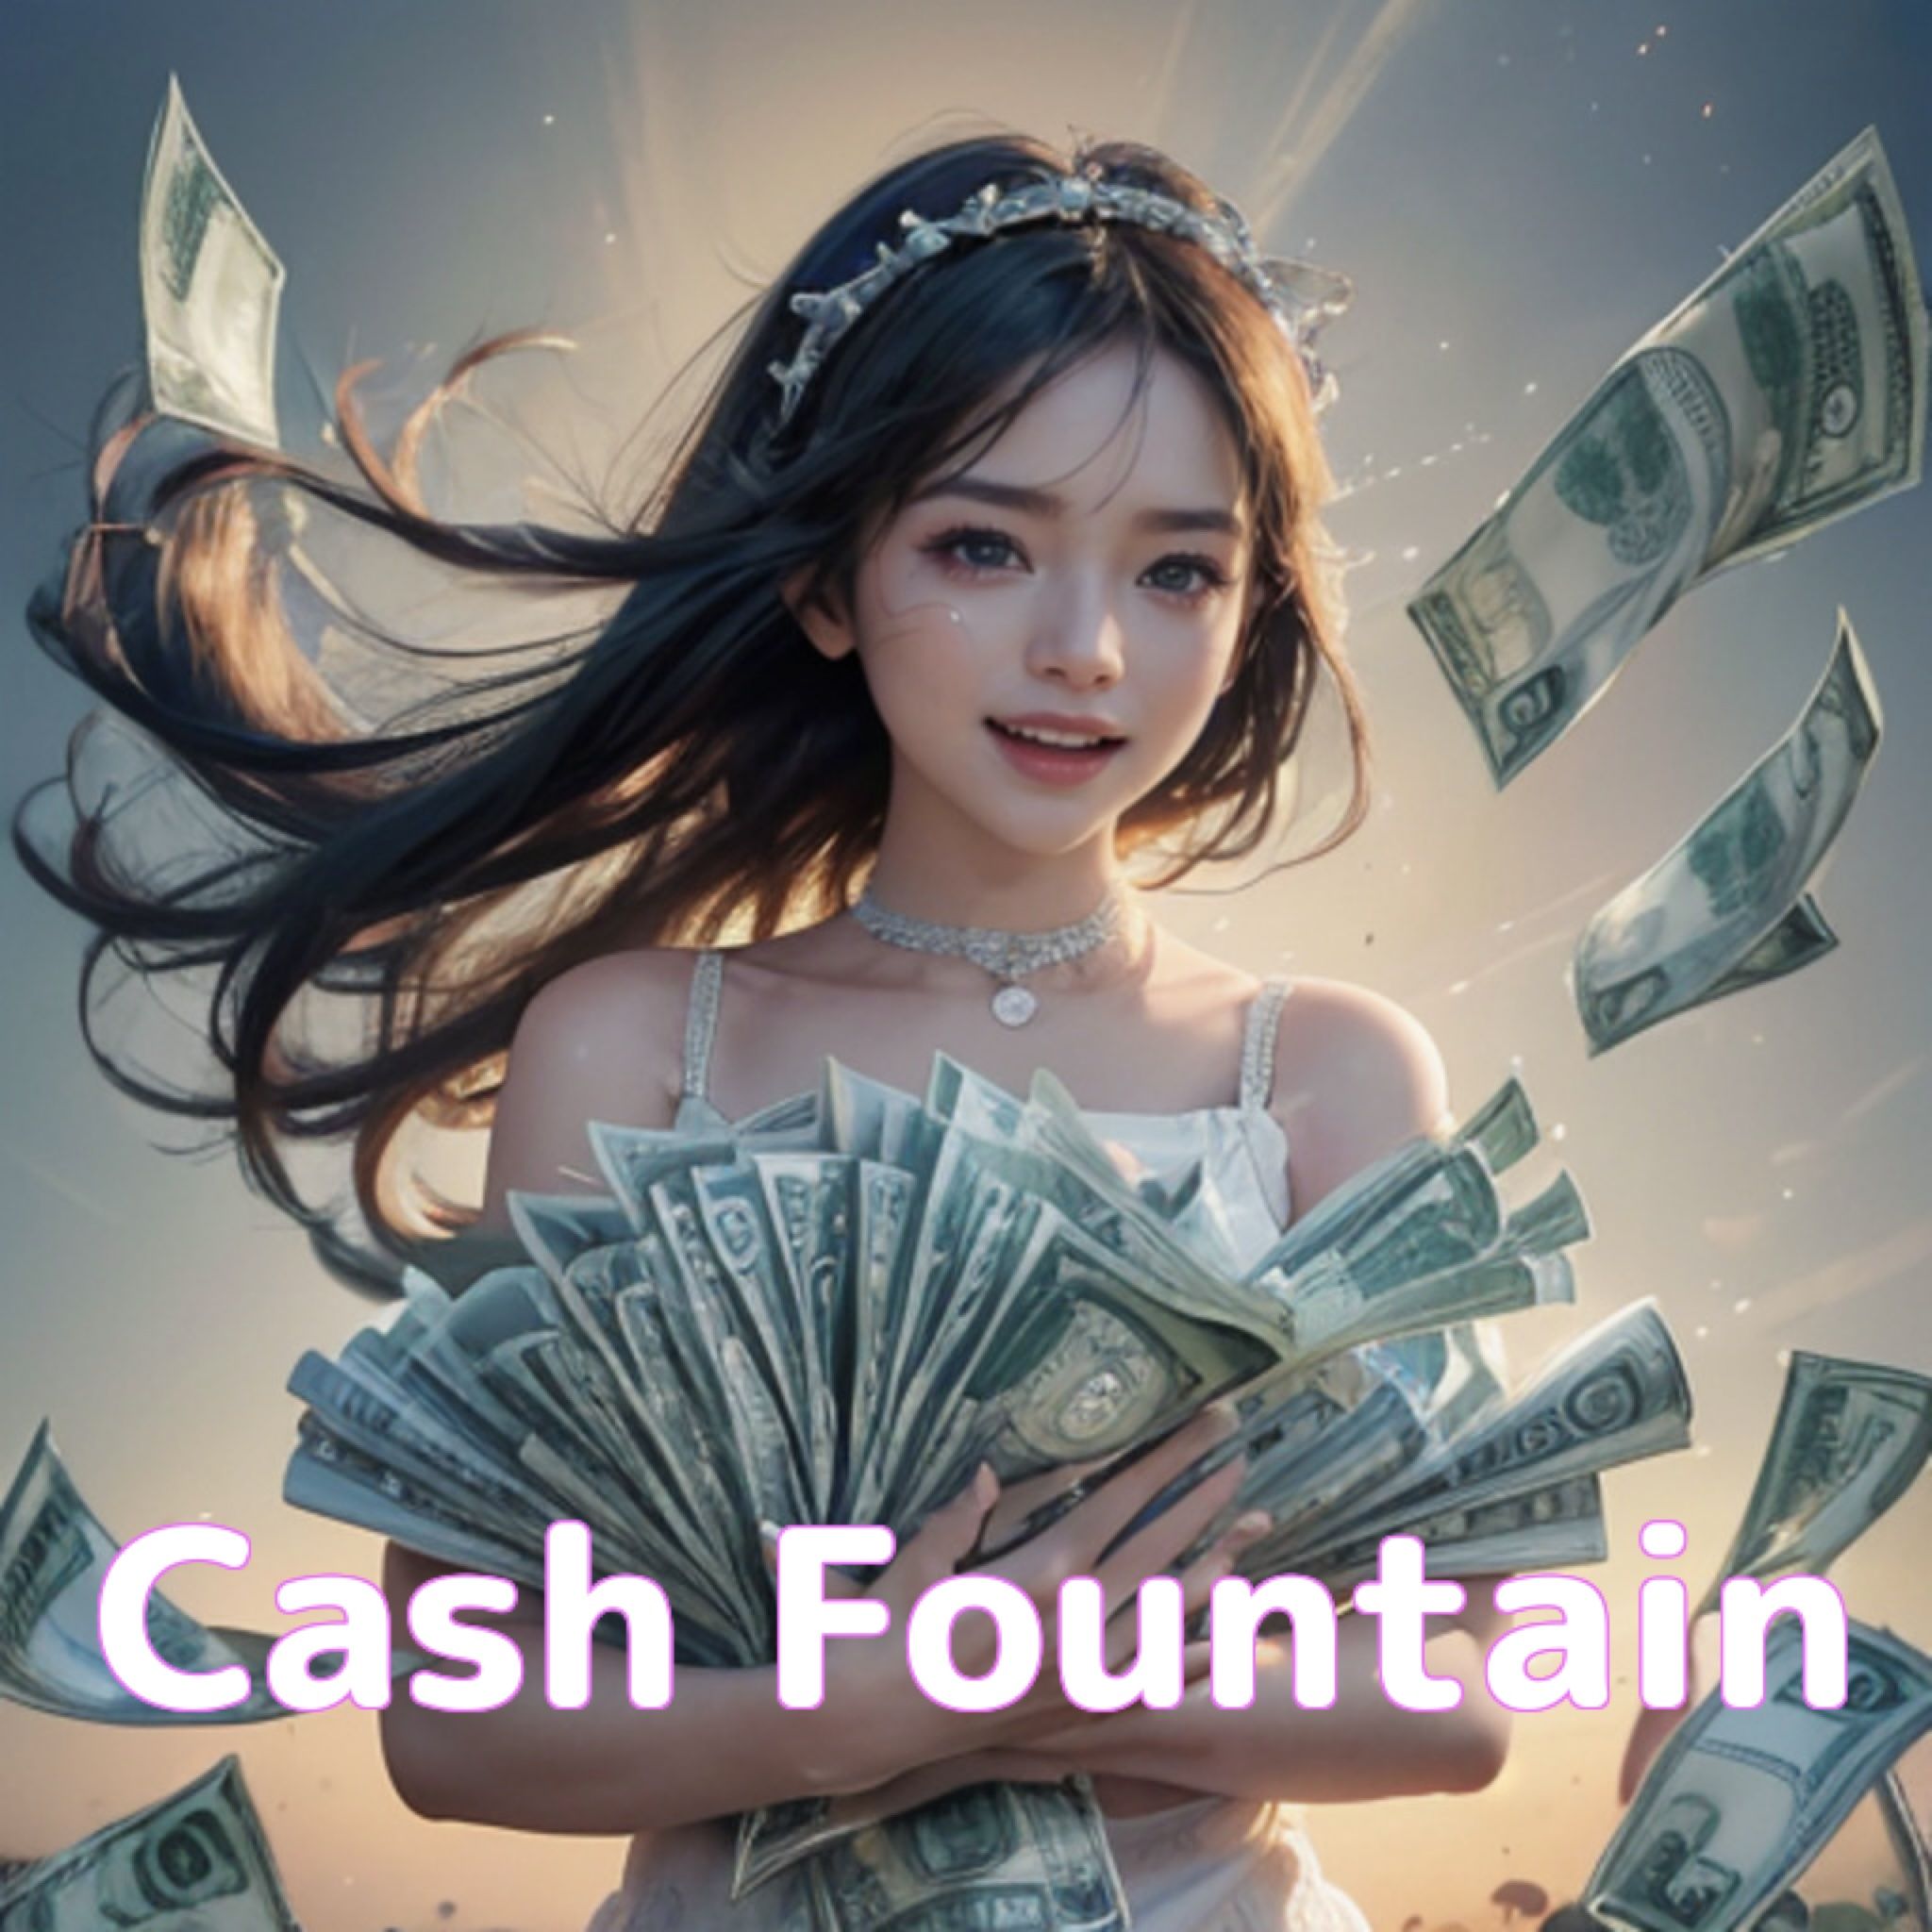 Cash Fountain（安いときに買い高いときに売る王道のトレードを基本とし、スワップポイントと長期含み益も狙うハイブリッド戦略EA。カスタマイズにより短期スキャルピングから長期トレードまで多様なスタイルに対応）のご紹介